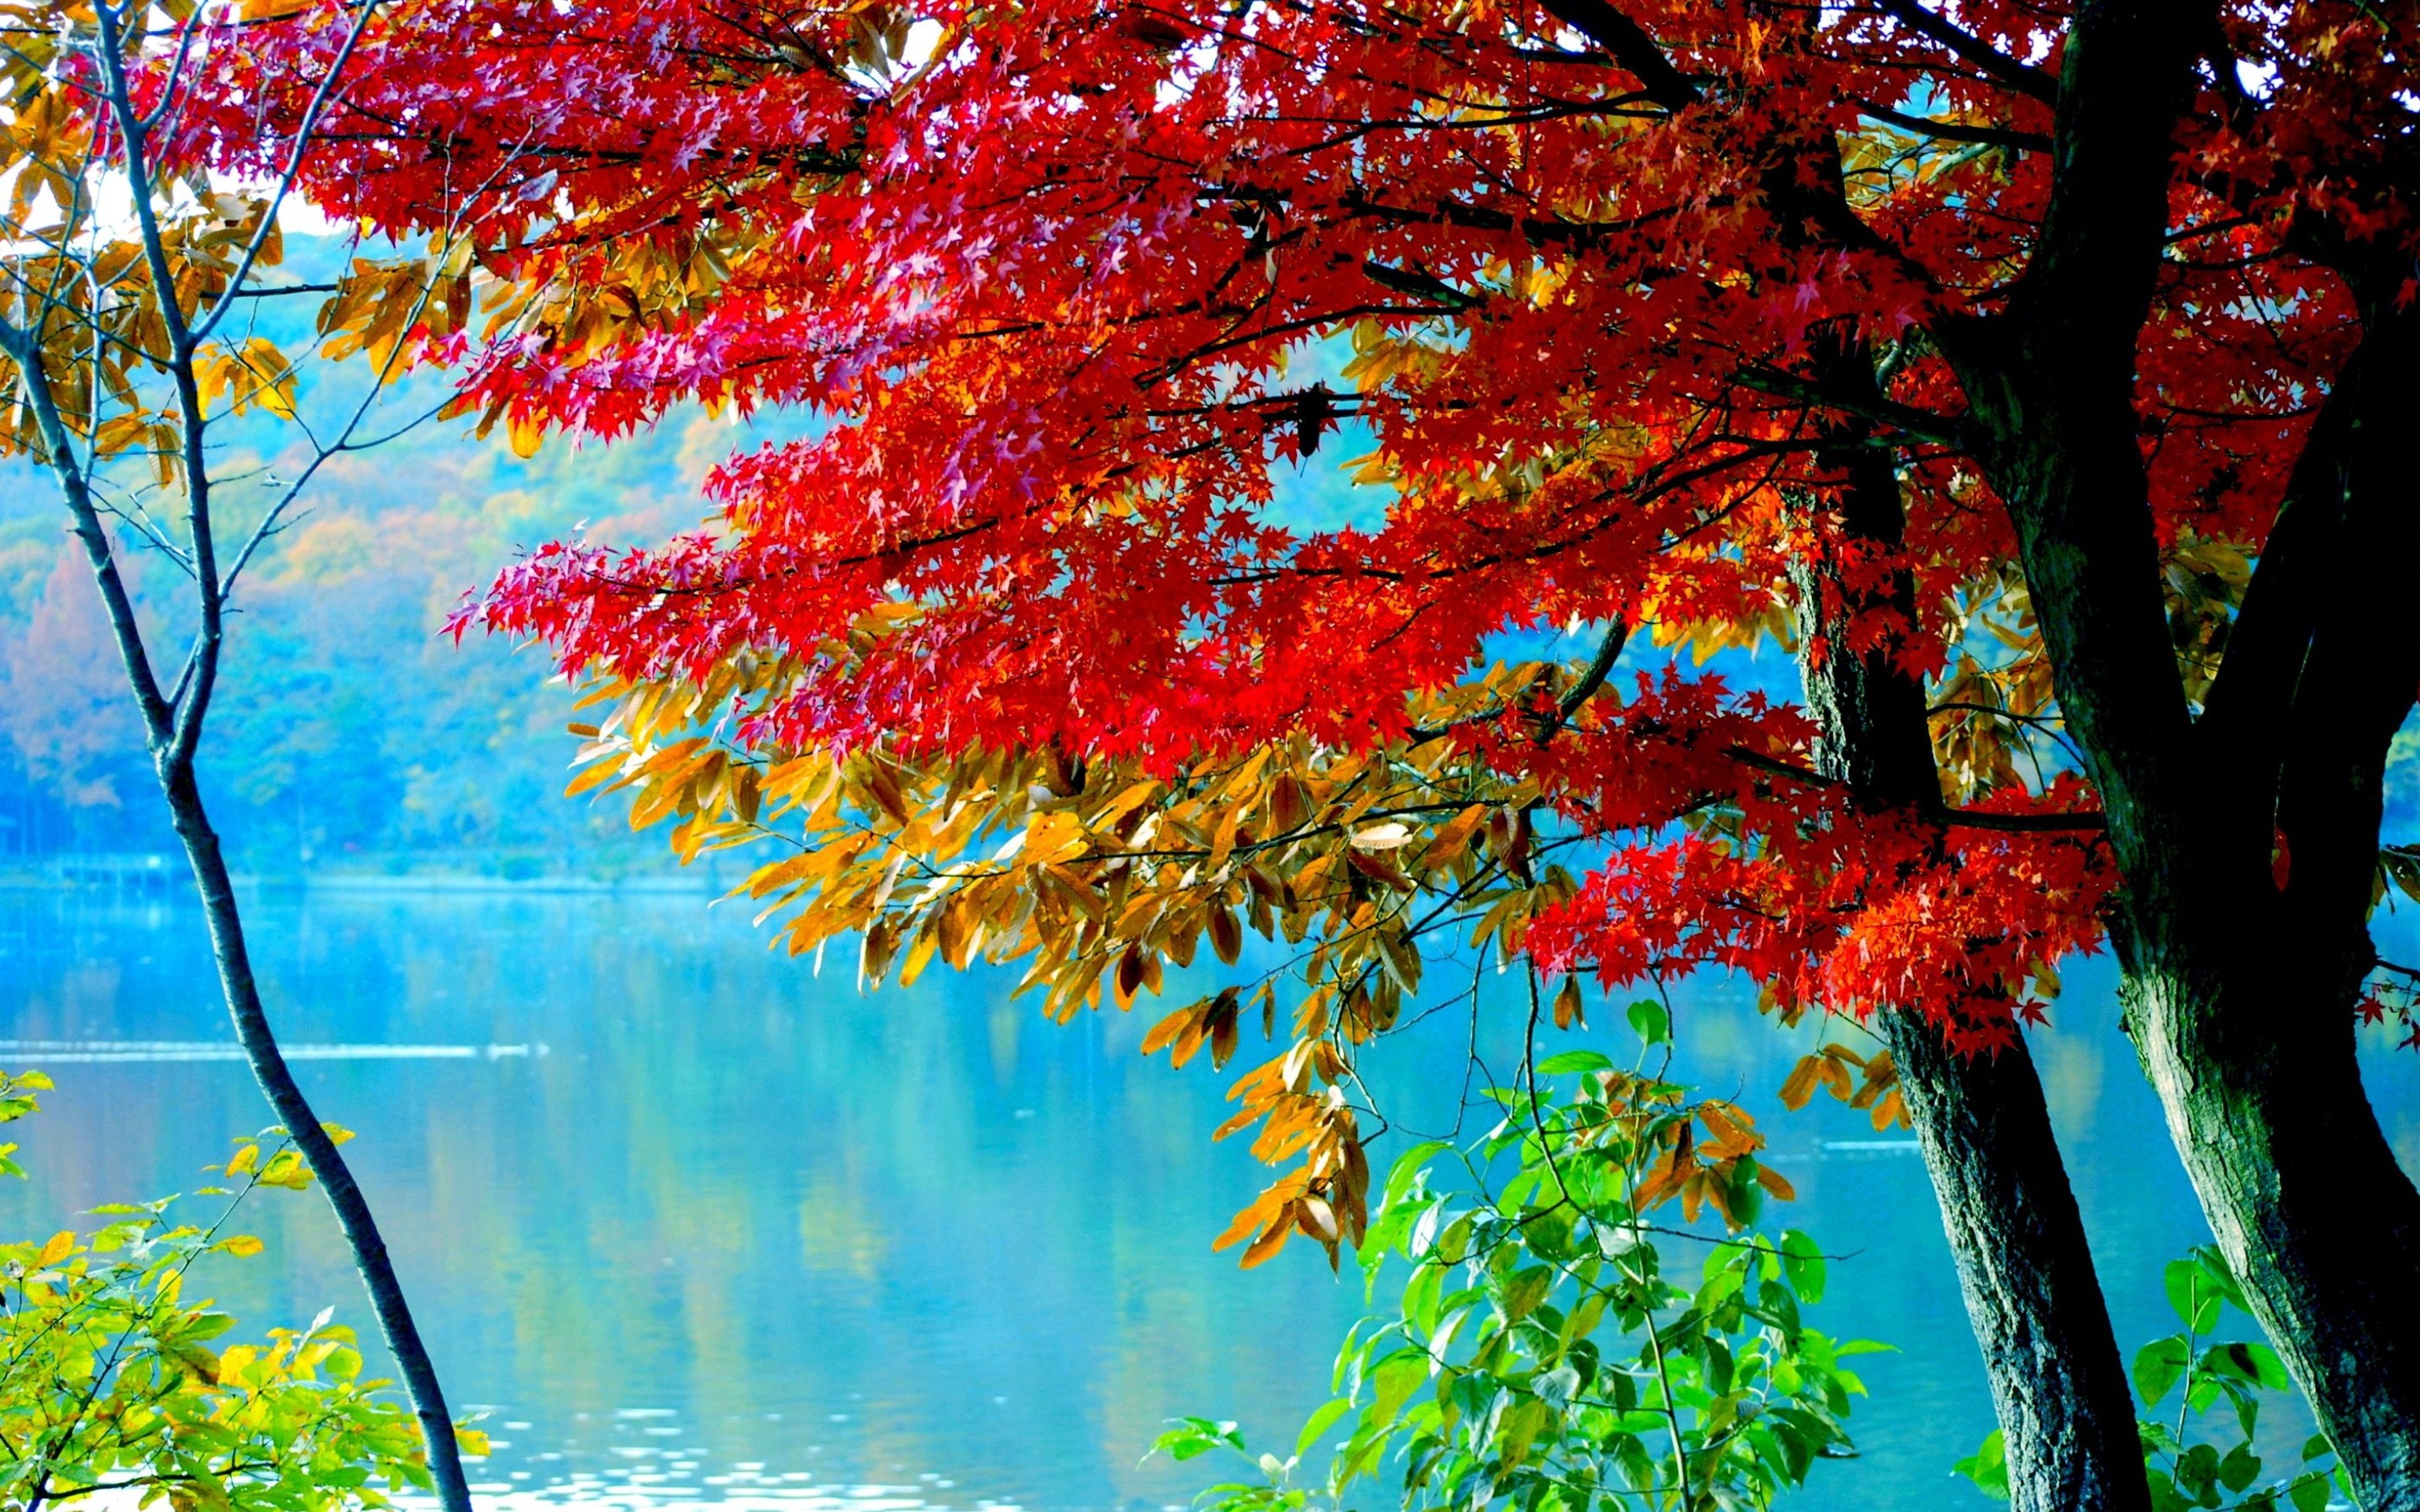 Скачать обои бесплатно Река, Осень, Дерево, Земля/природа картинка на рабочий стол ПК